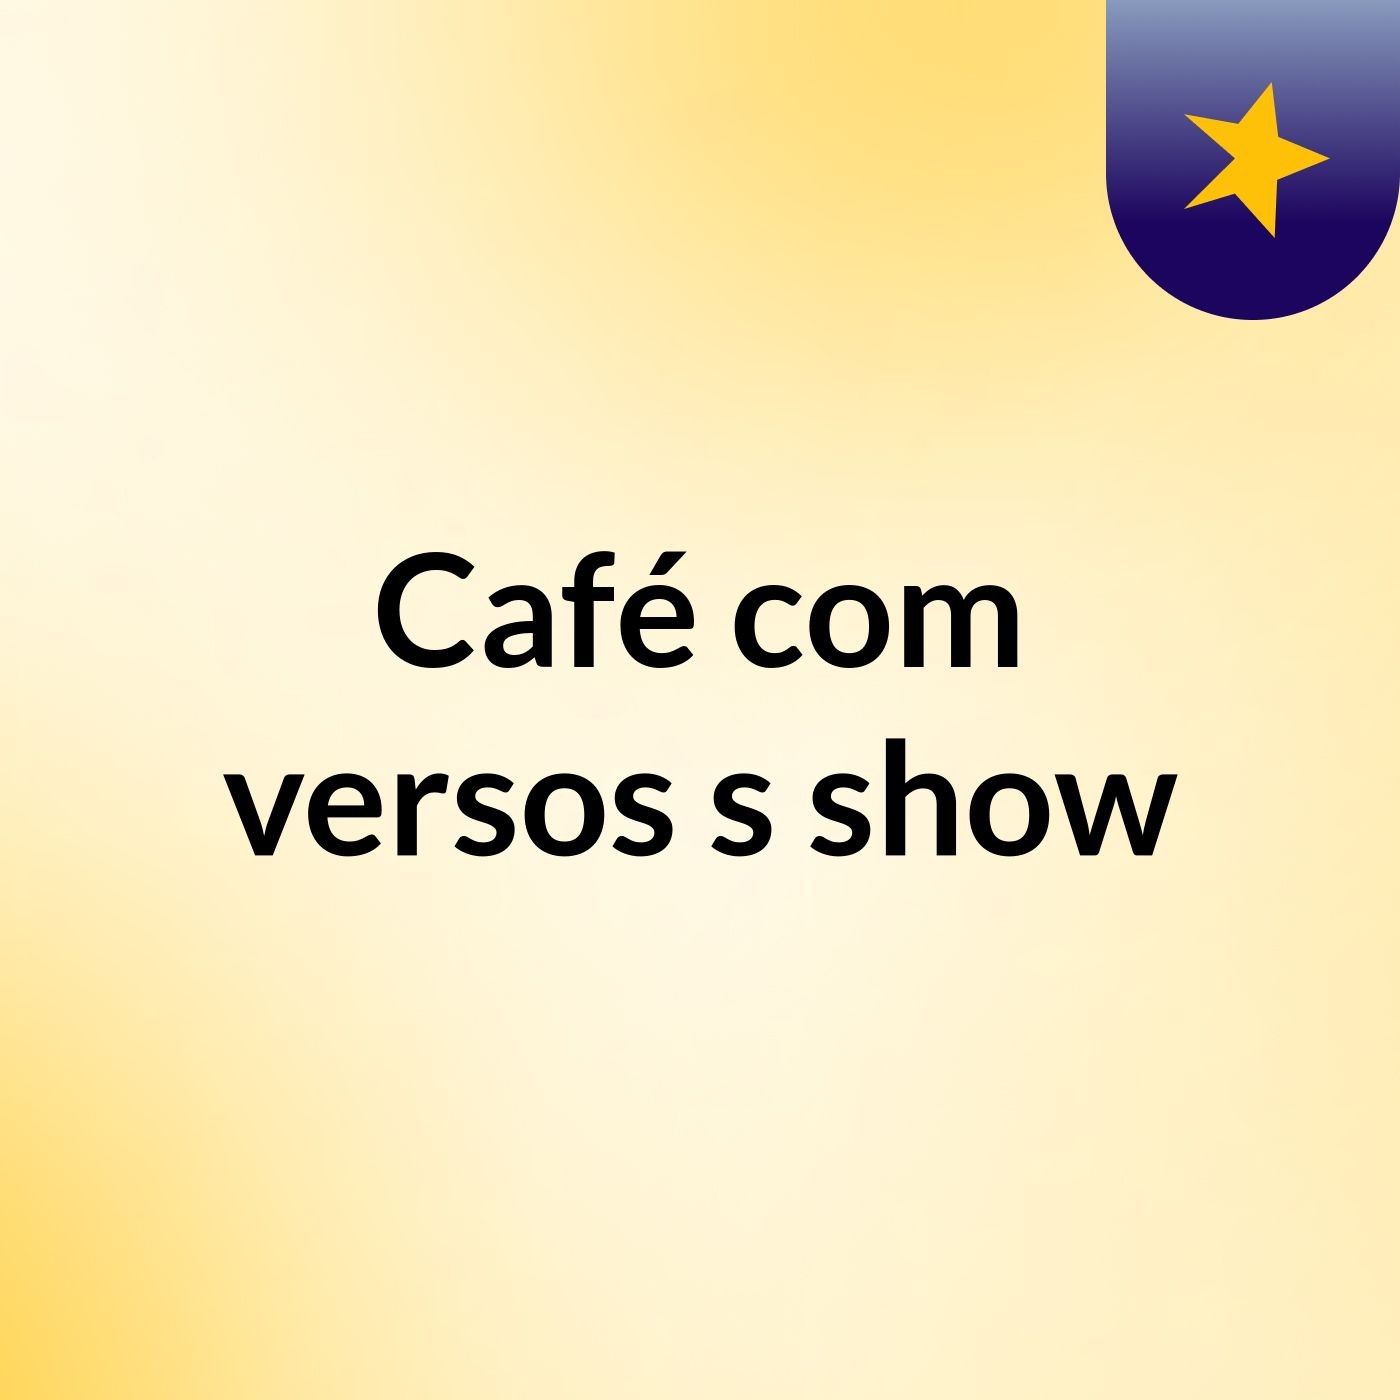 Café com versos's show